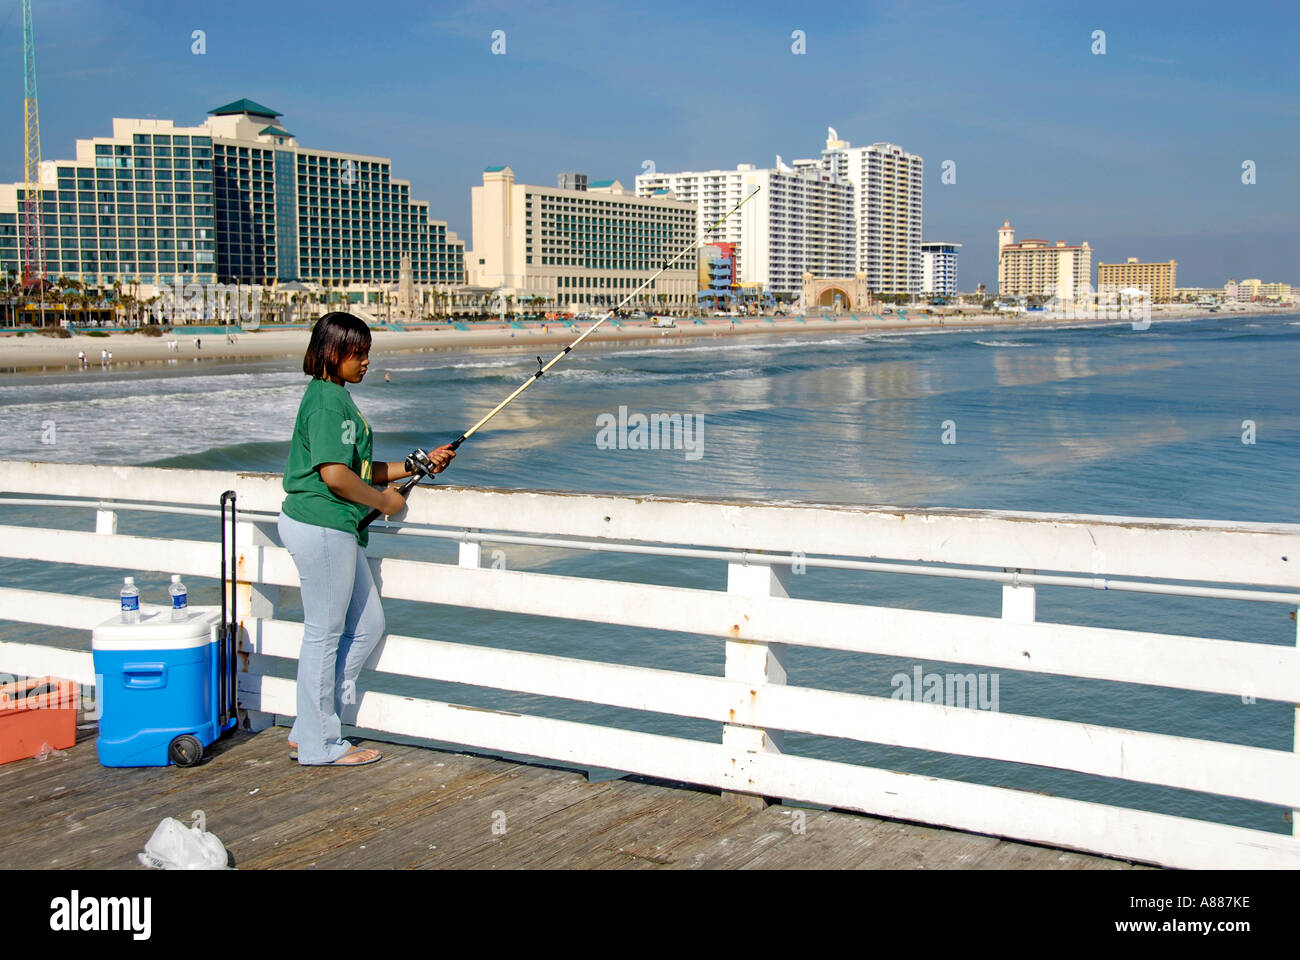 Angeln Wandern und andere Aktivitäten finden statt auf der Pier und Boardwalk am Daytona Beach Florida FL am Atlantischen Ozean Stockfoto